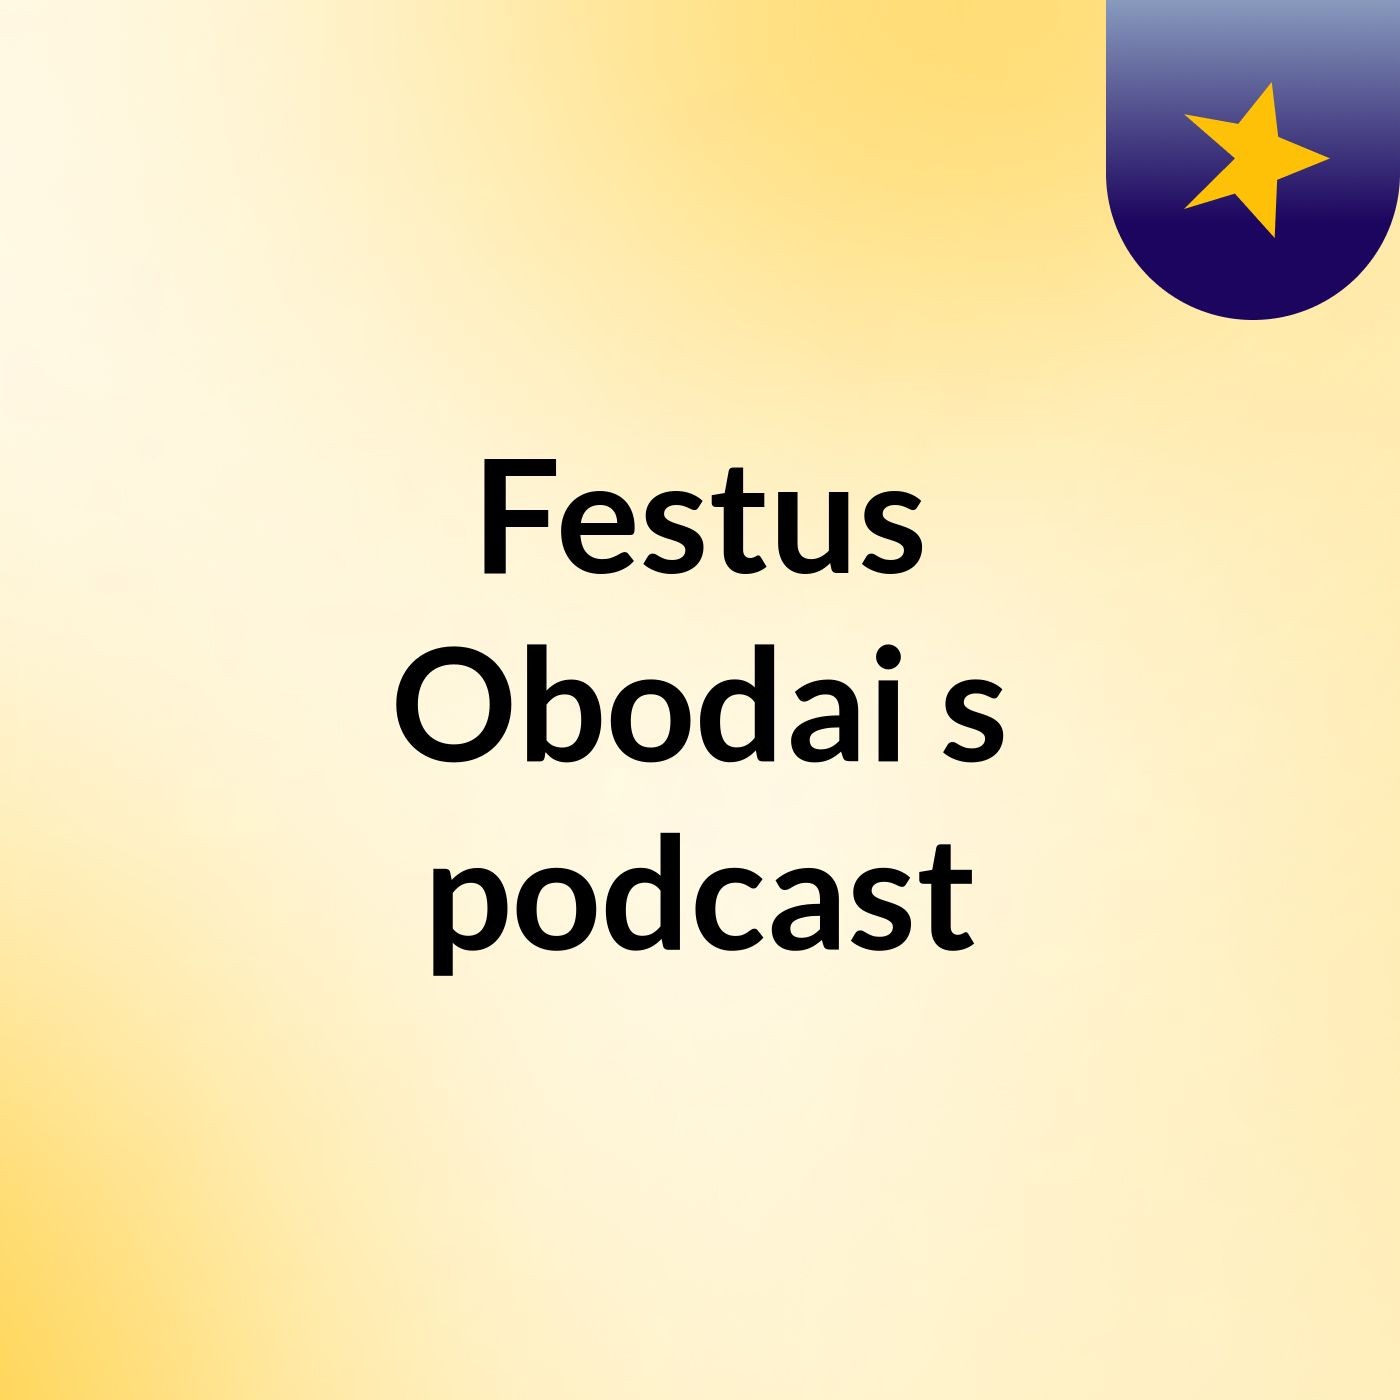 Episode 2 - Festus Obodai's podcast